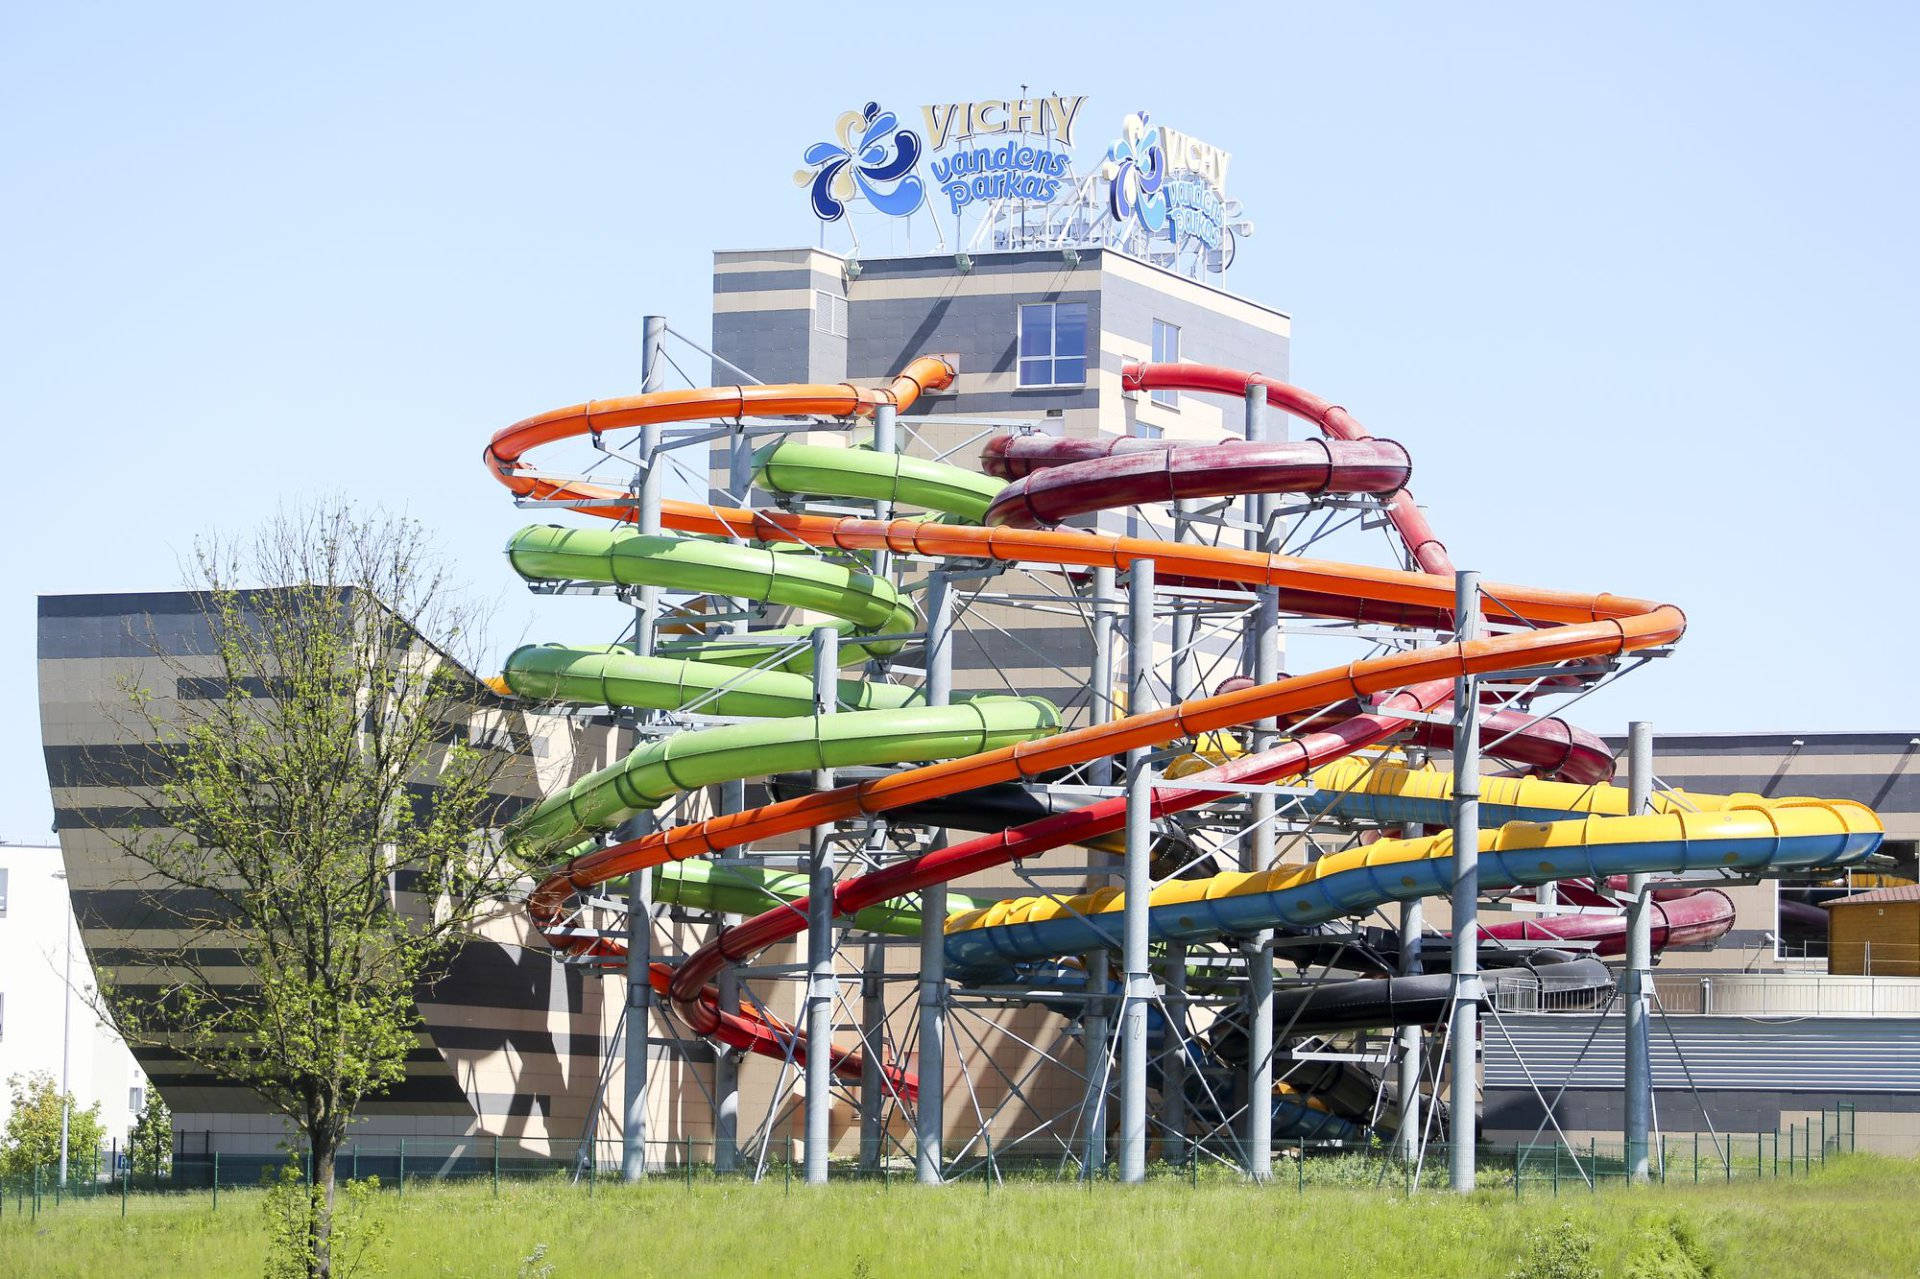 Vilnius Vichy Water Park